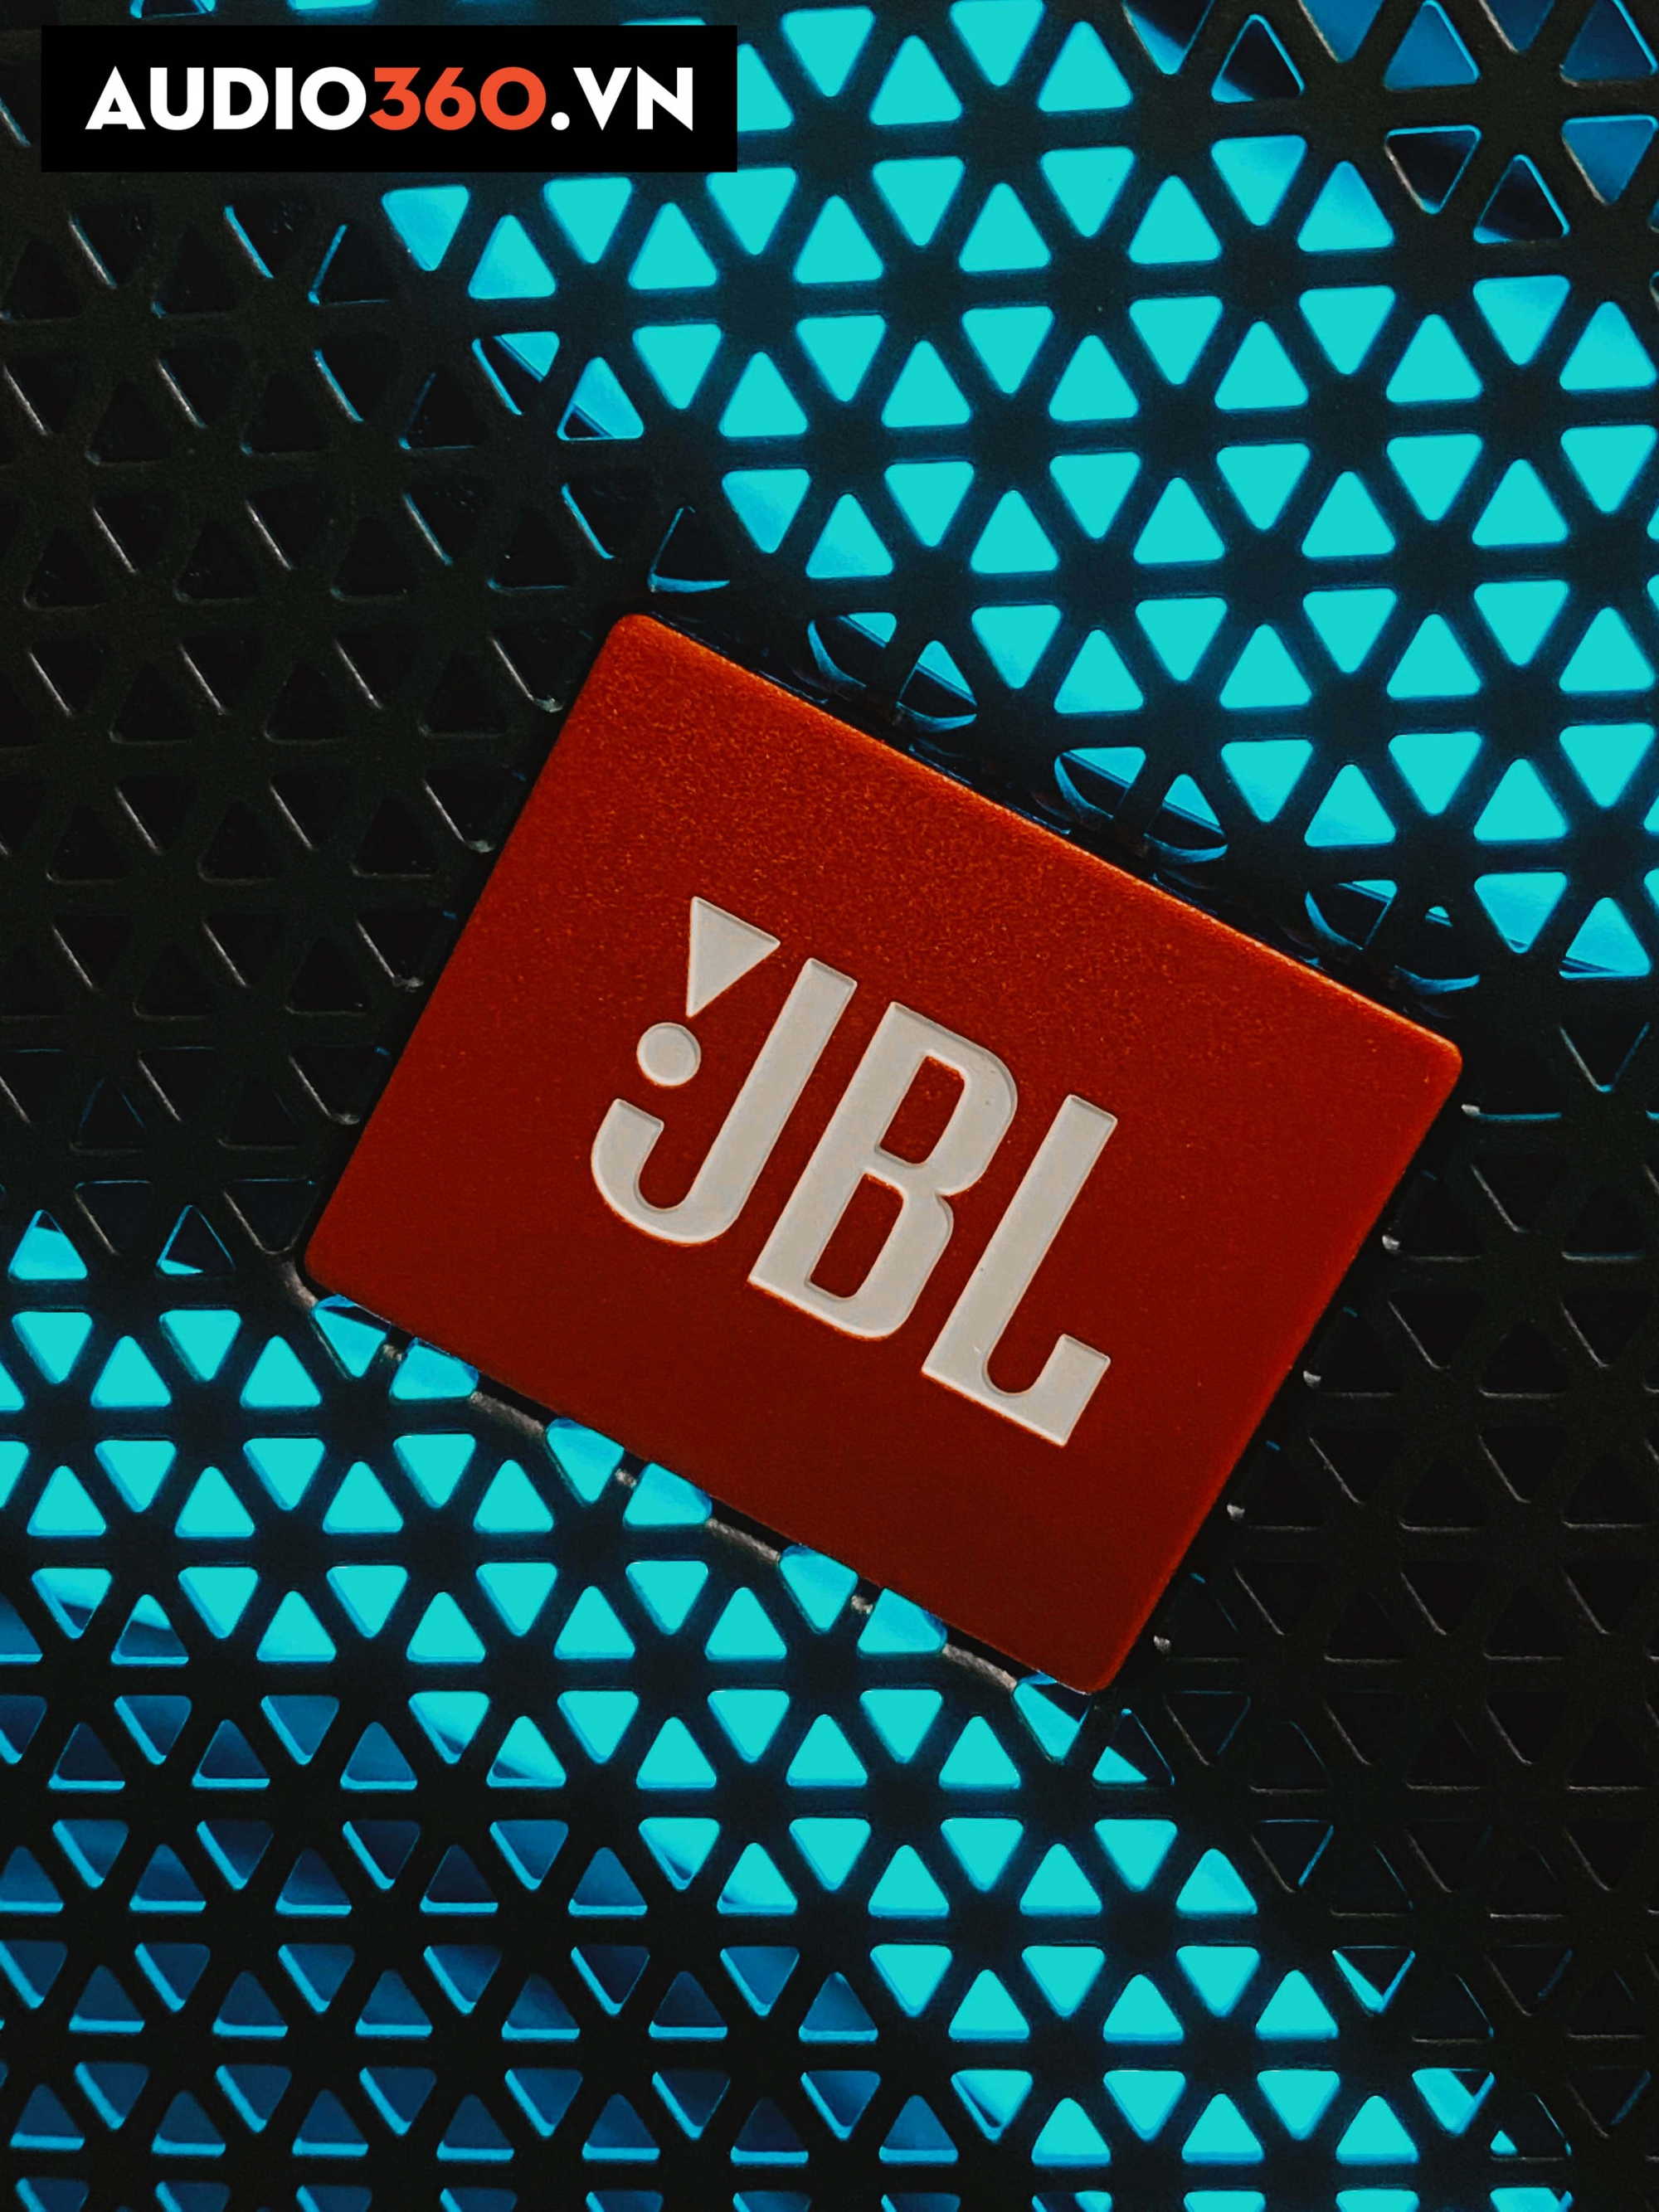 JBL là có đa dạng dòng loa bluetooth phục vụ cho mọi nhu cầu âm nhạc.